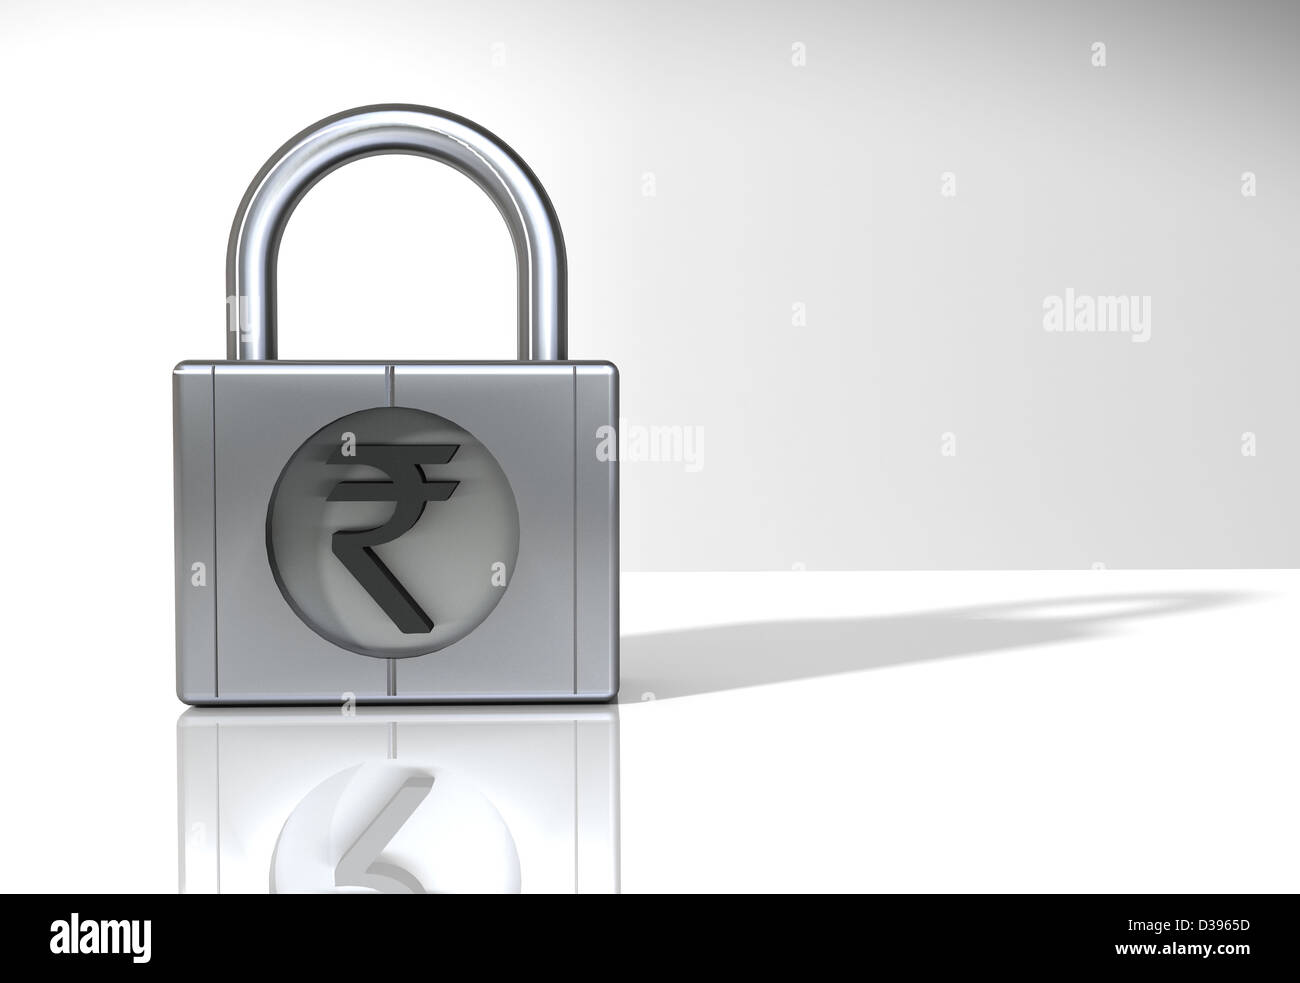 Représentation de l'Indian Rupee symbole sur un cadenas Banque D'Images